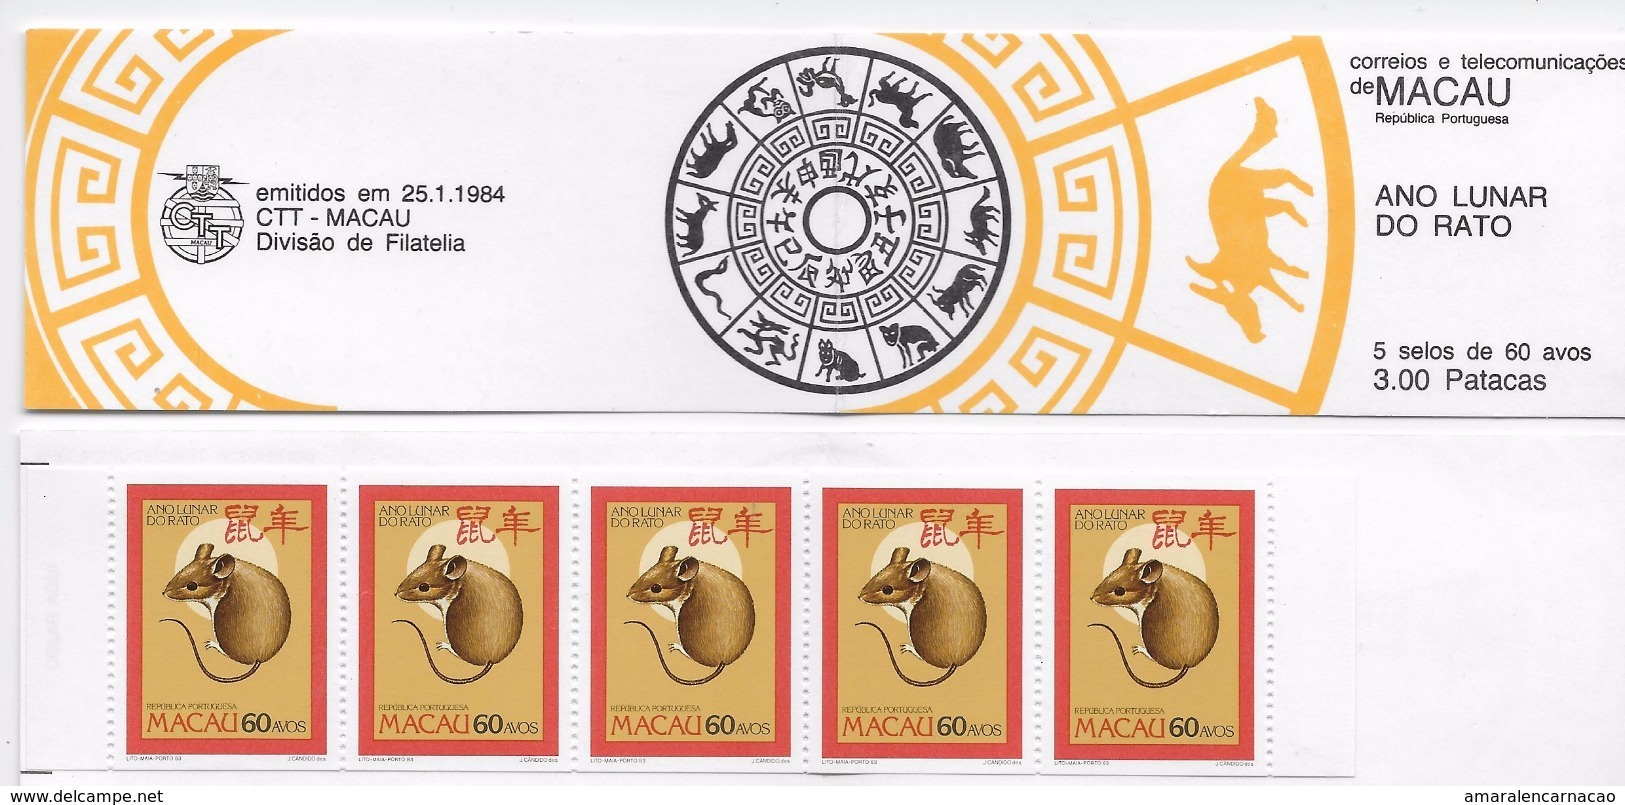 2 SCANS - TIMBRES - STAMPS - PORTUGAL - MACAO / MACAU - BOOKLET -5X0,60-ANNÉE LUNAIRE DU RAT - LUNAR YAR OF THE MOUSE - Postzegelboekjes